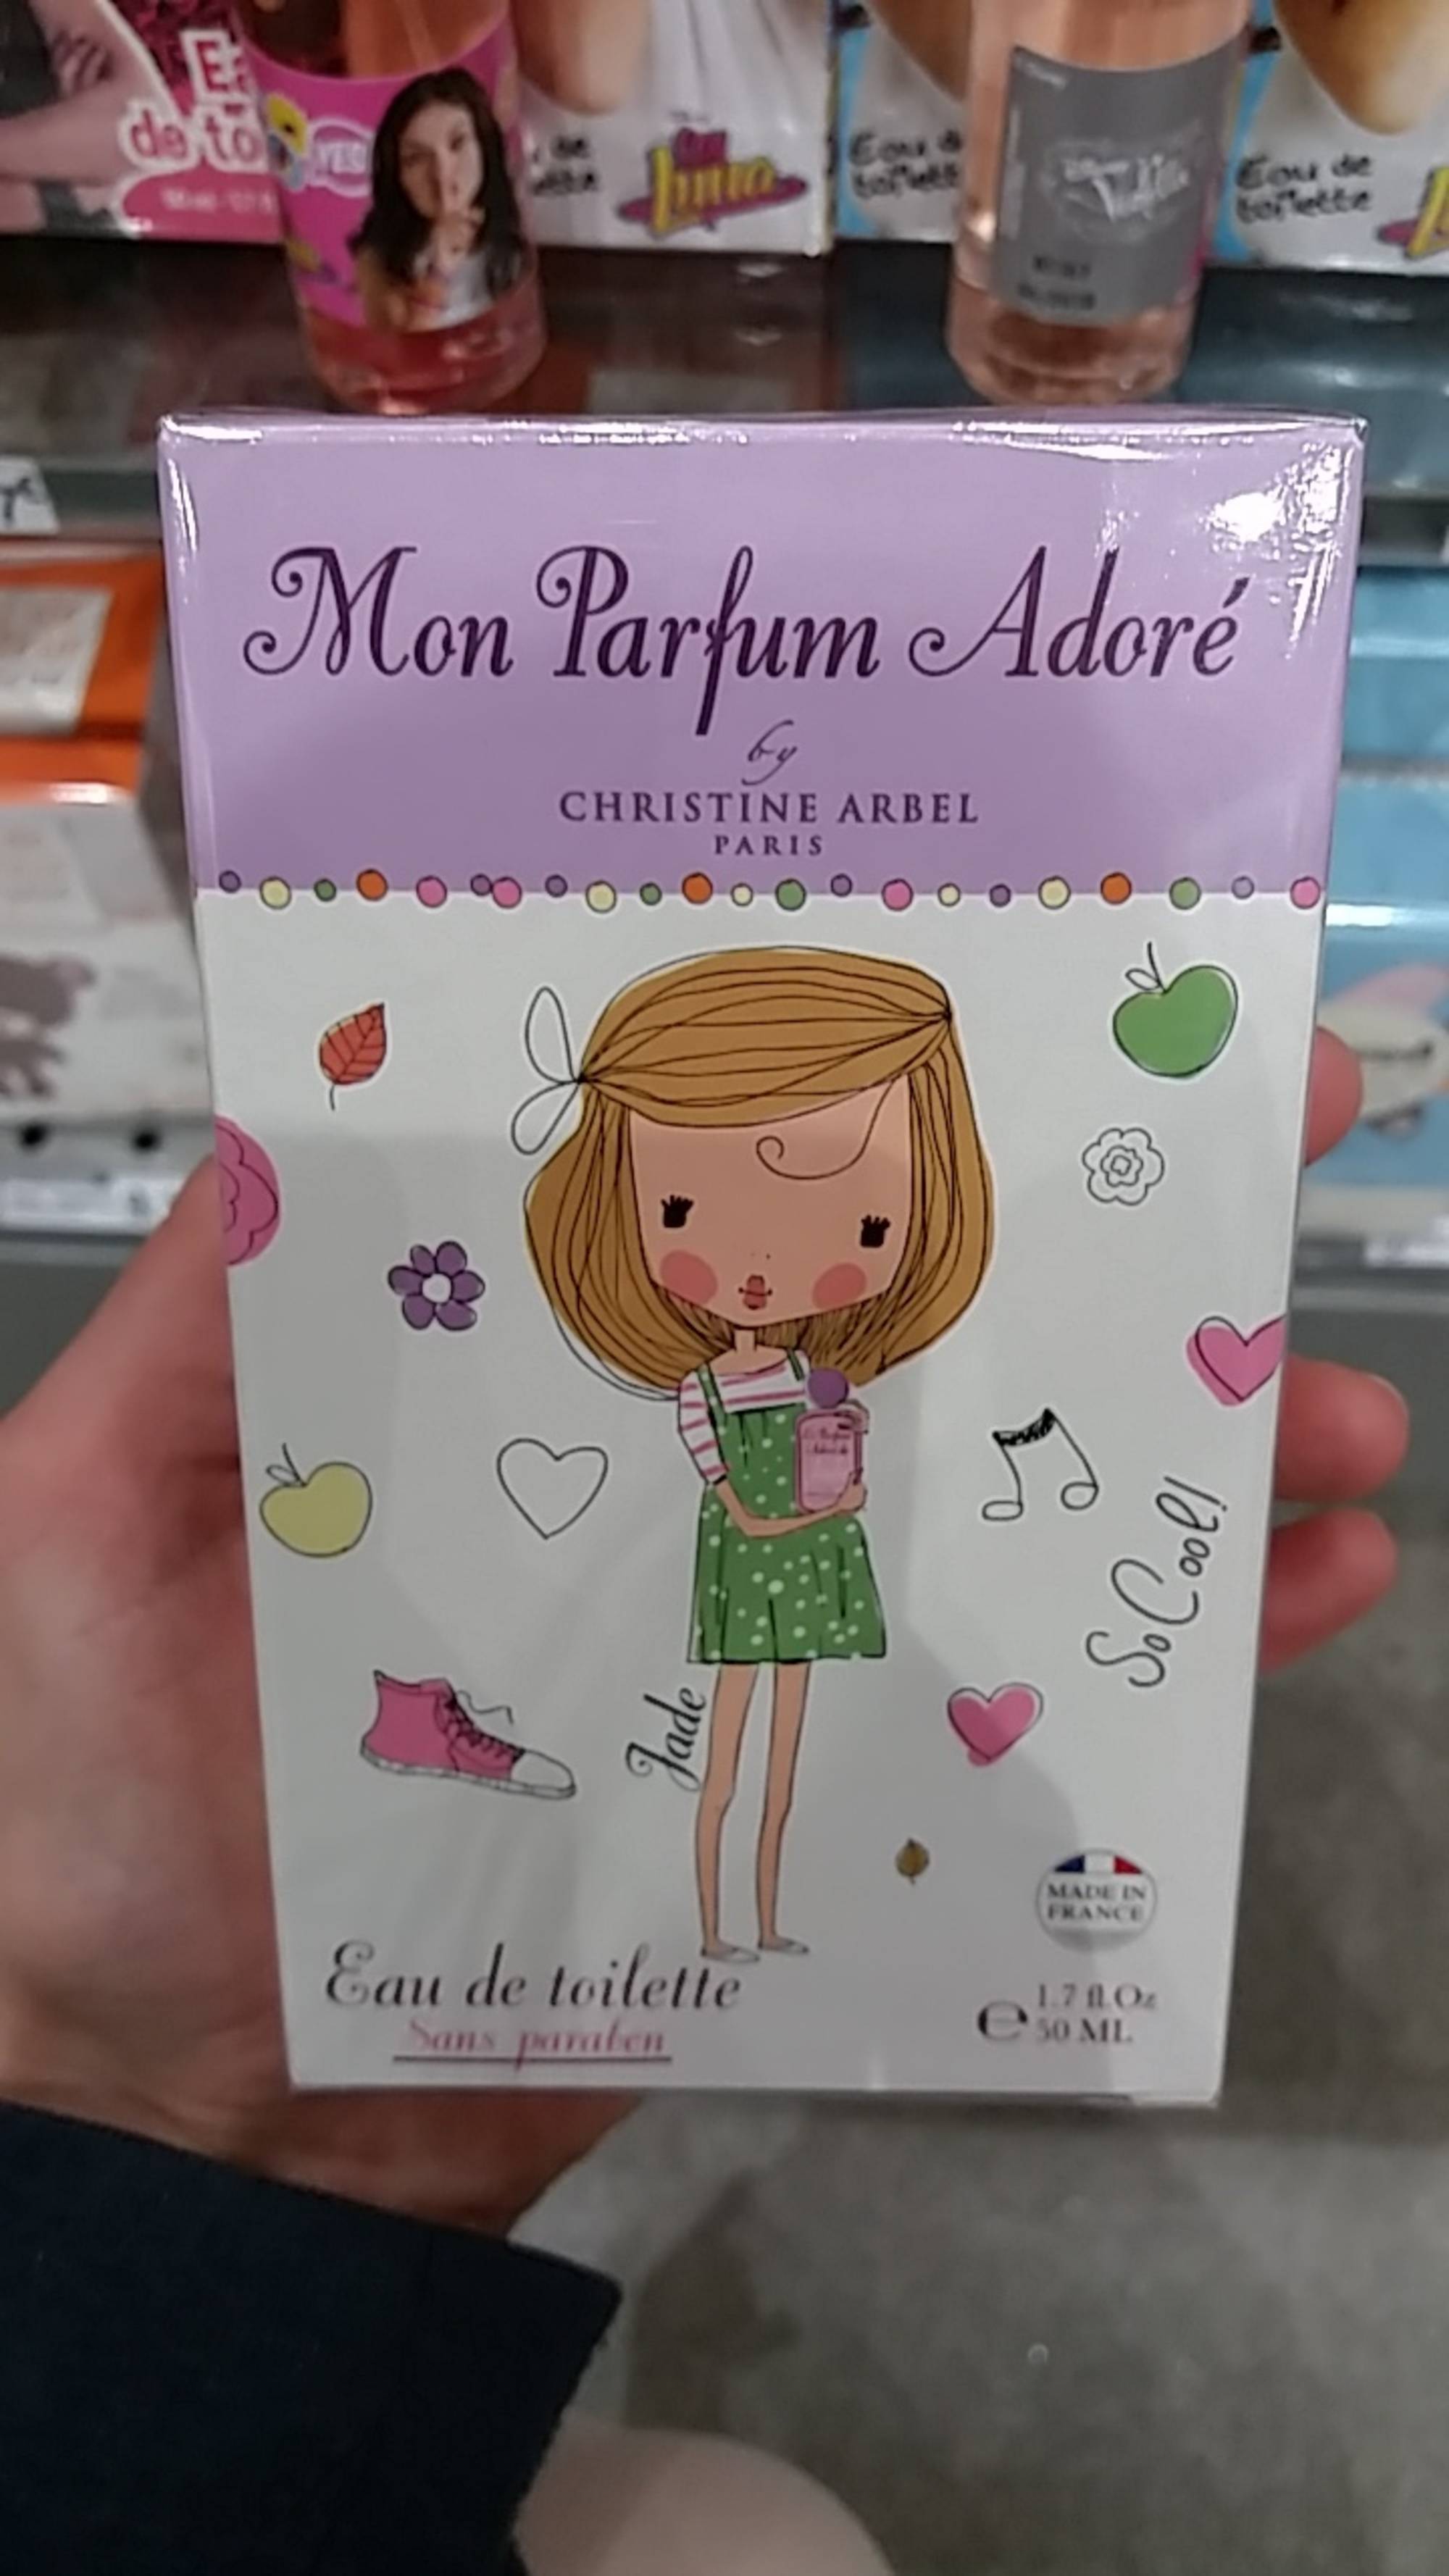 CHRISTINE ARBEL PARIS - Mon Parfum Adoré - Eau de toilette